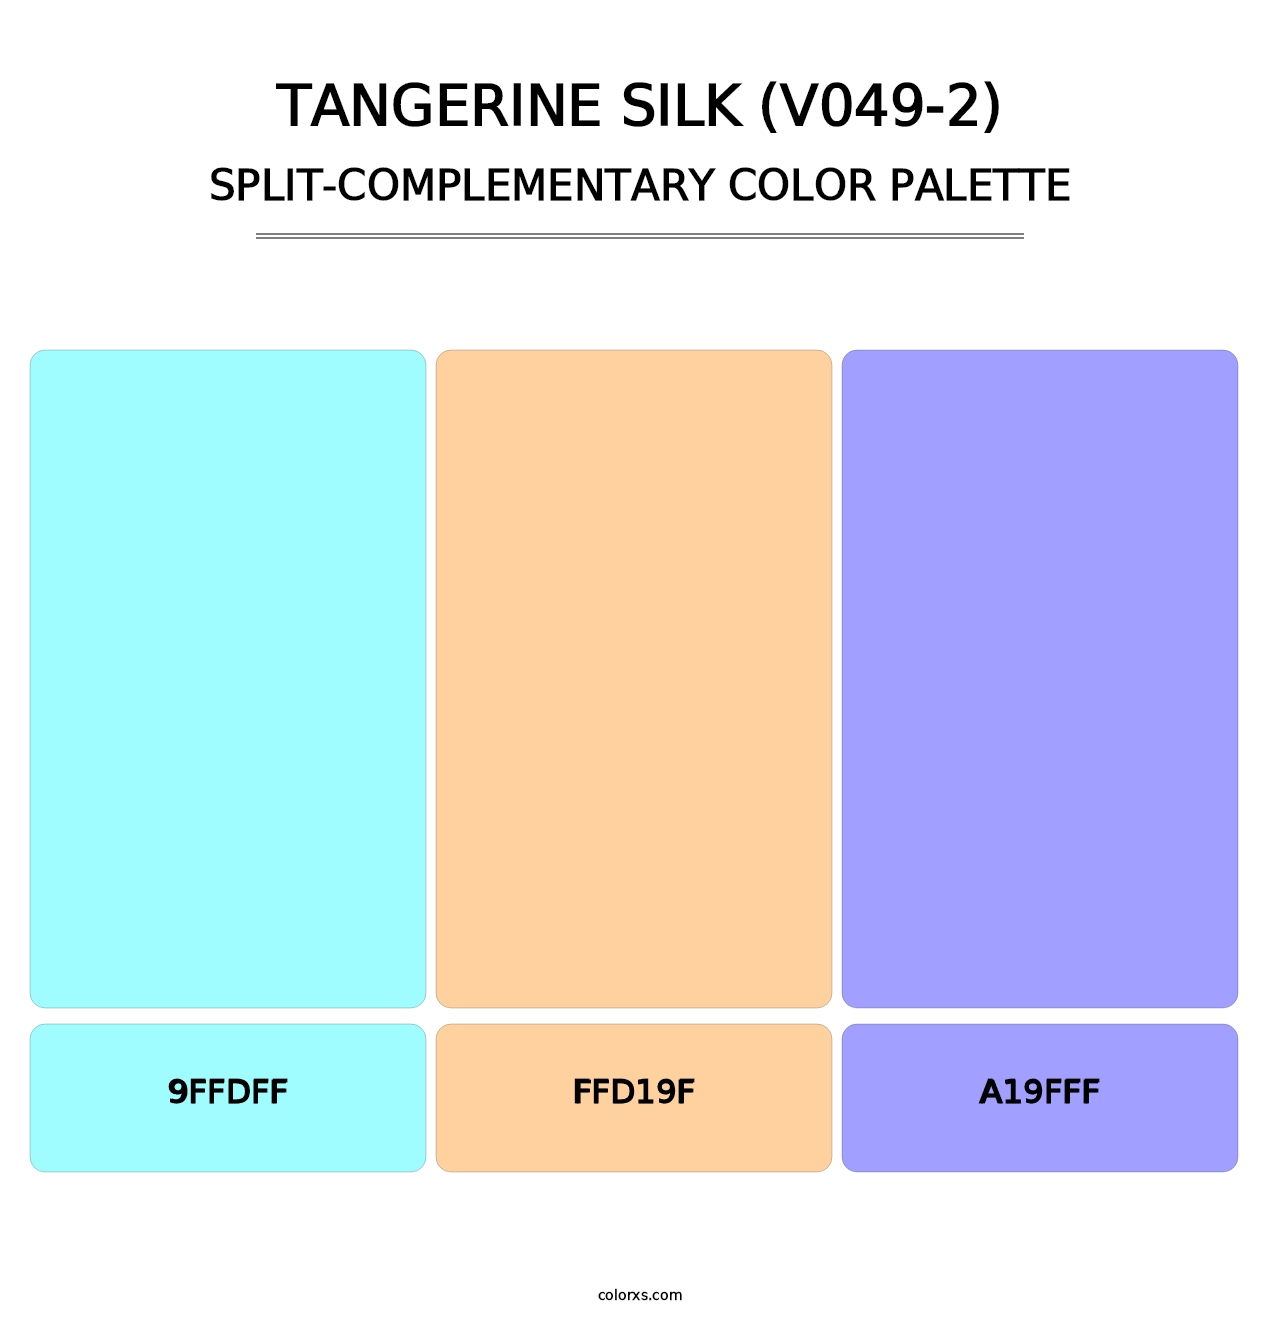 Tangerine Silk (V049-2) - Split-Complementary Color Palette